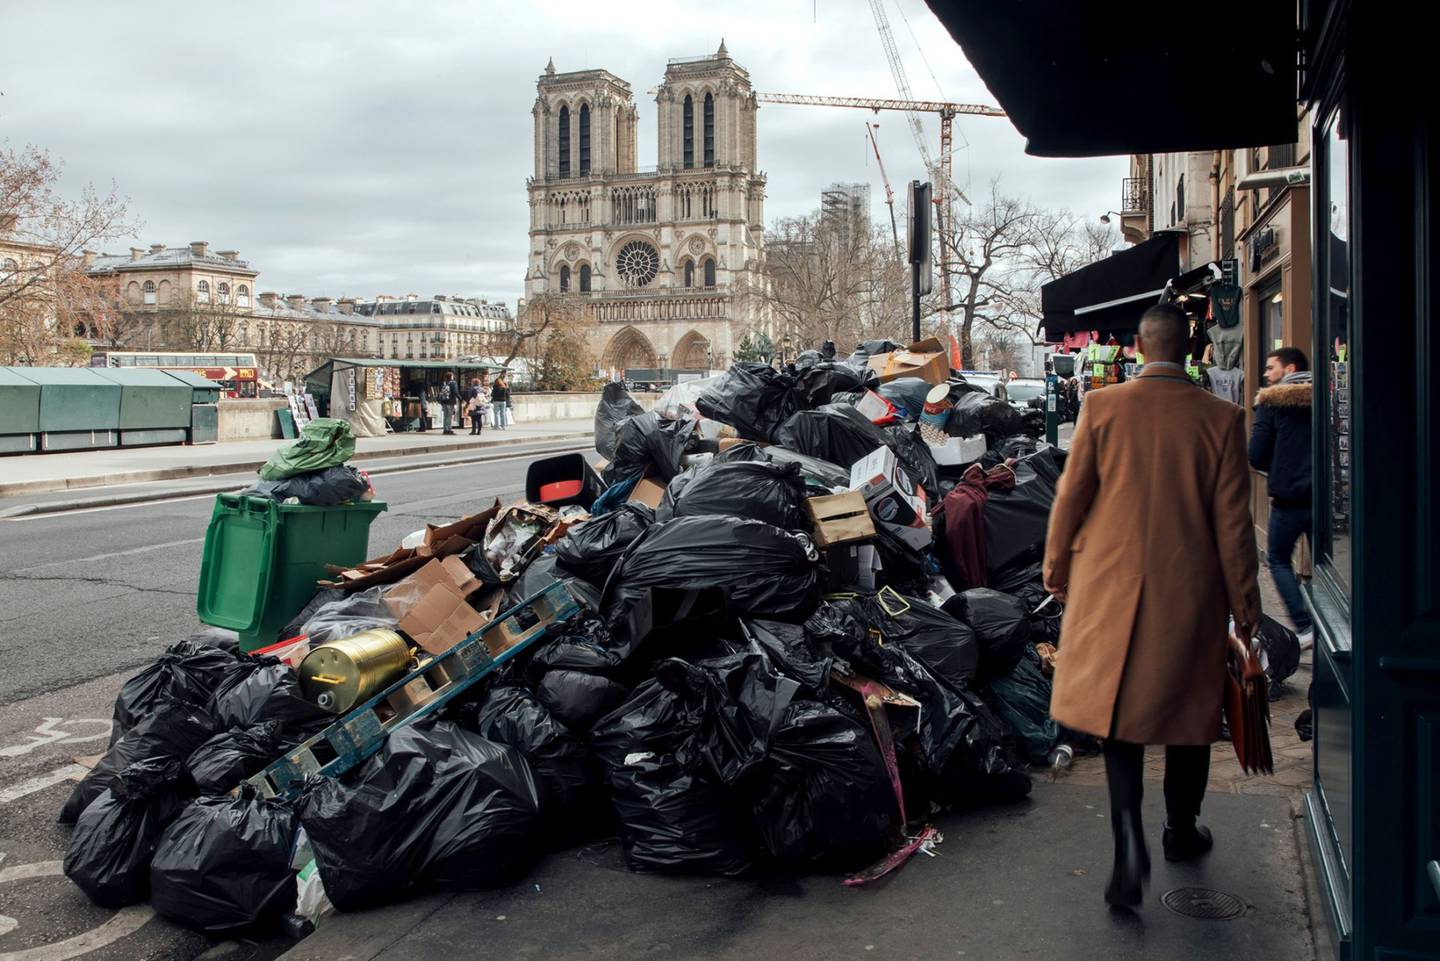 Bolsas de basura sin recoger cerca de la catedral de Notre-Dame, en el centro de París, en marzo. Fotógrafo: Cyril Marcilhacy/Bloombergdfd